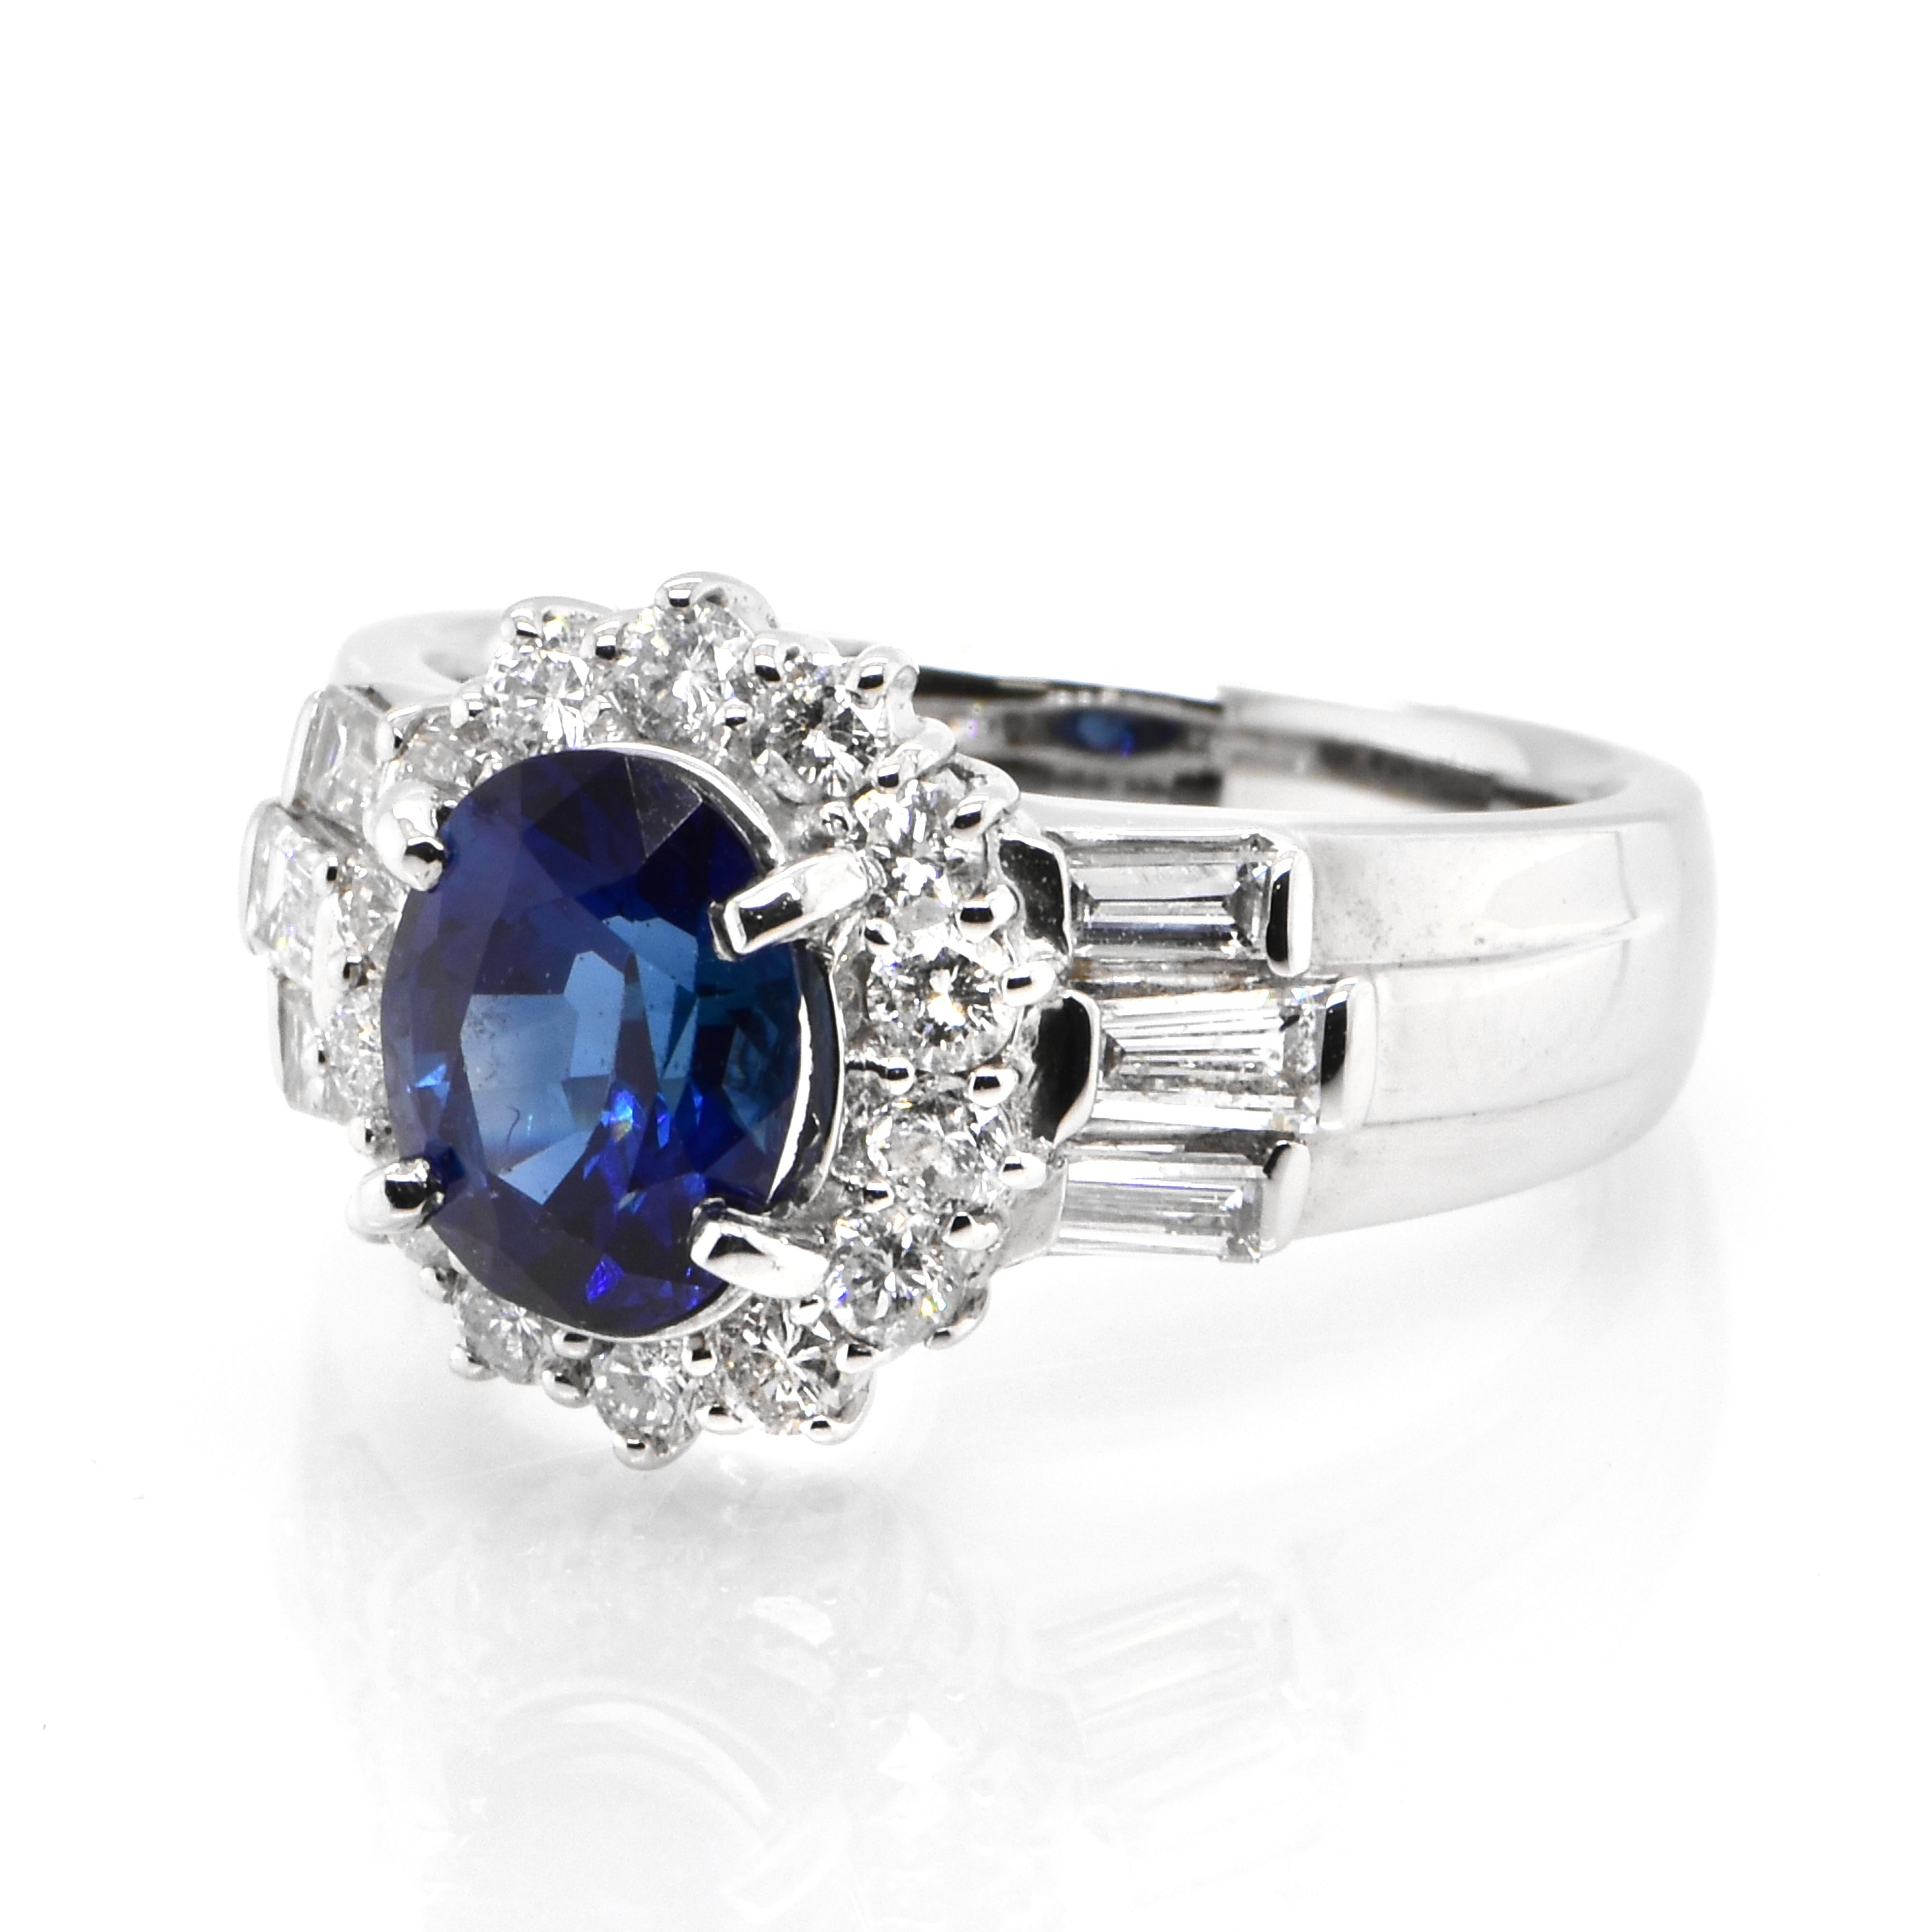 Cette magnifique bague est ornée d'un saphir bleu royal naturel de 1,522 carat et d'accents de diamants de 0,81 carat sertis dans du platine. Les saphirs ont une durabilité extraordinaire - ils excellent en termes de dureté ainsi que de résistance